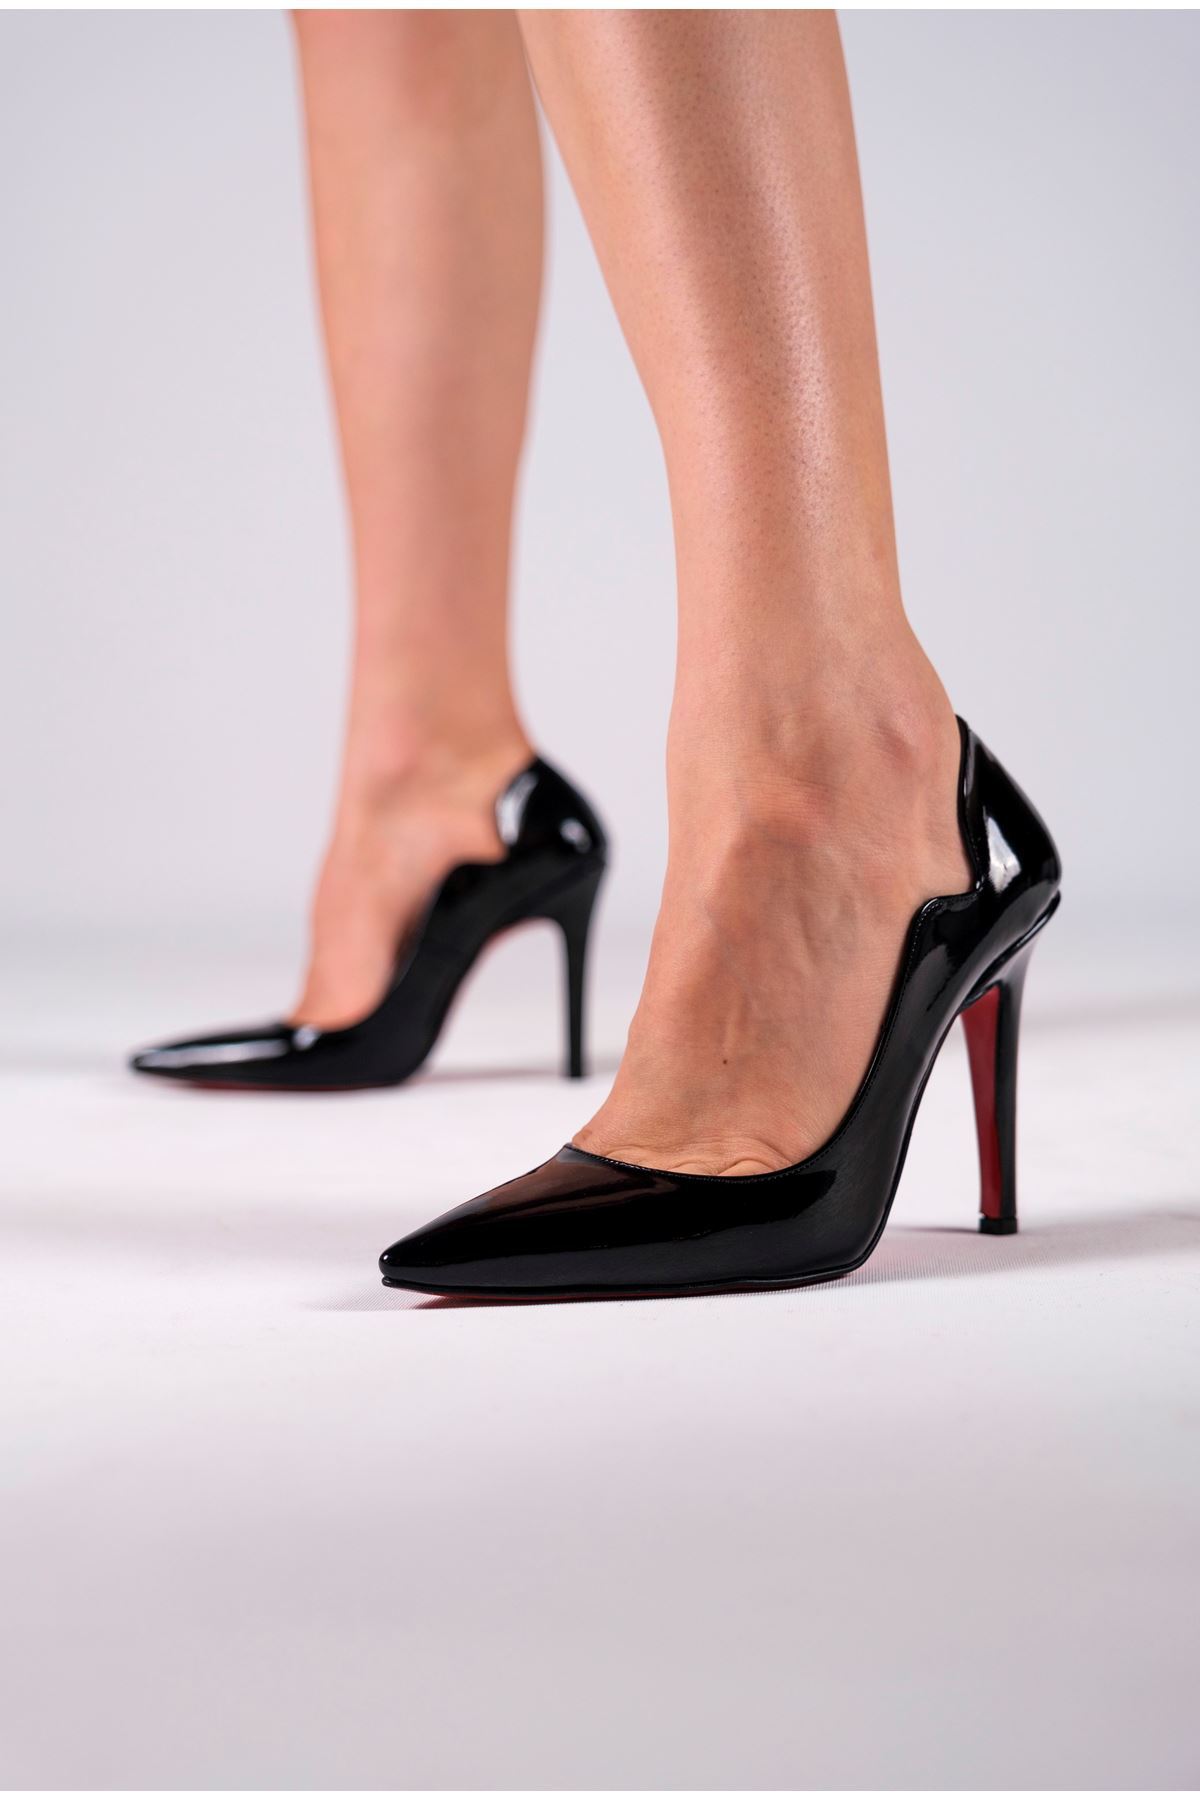 Siyah Rugan Kadın Topuklu Özel Tasarım Ayakkabı Stiletto Happy